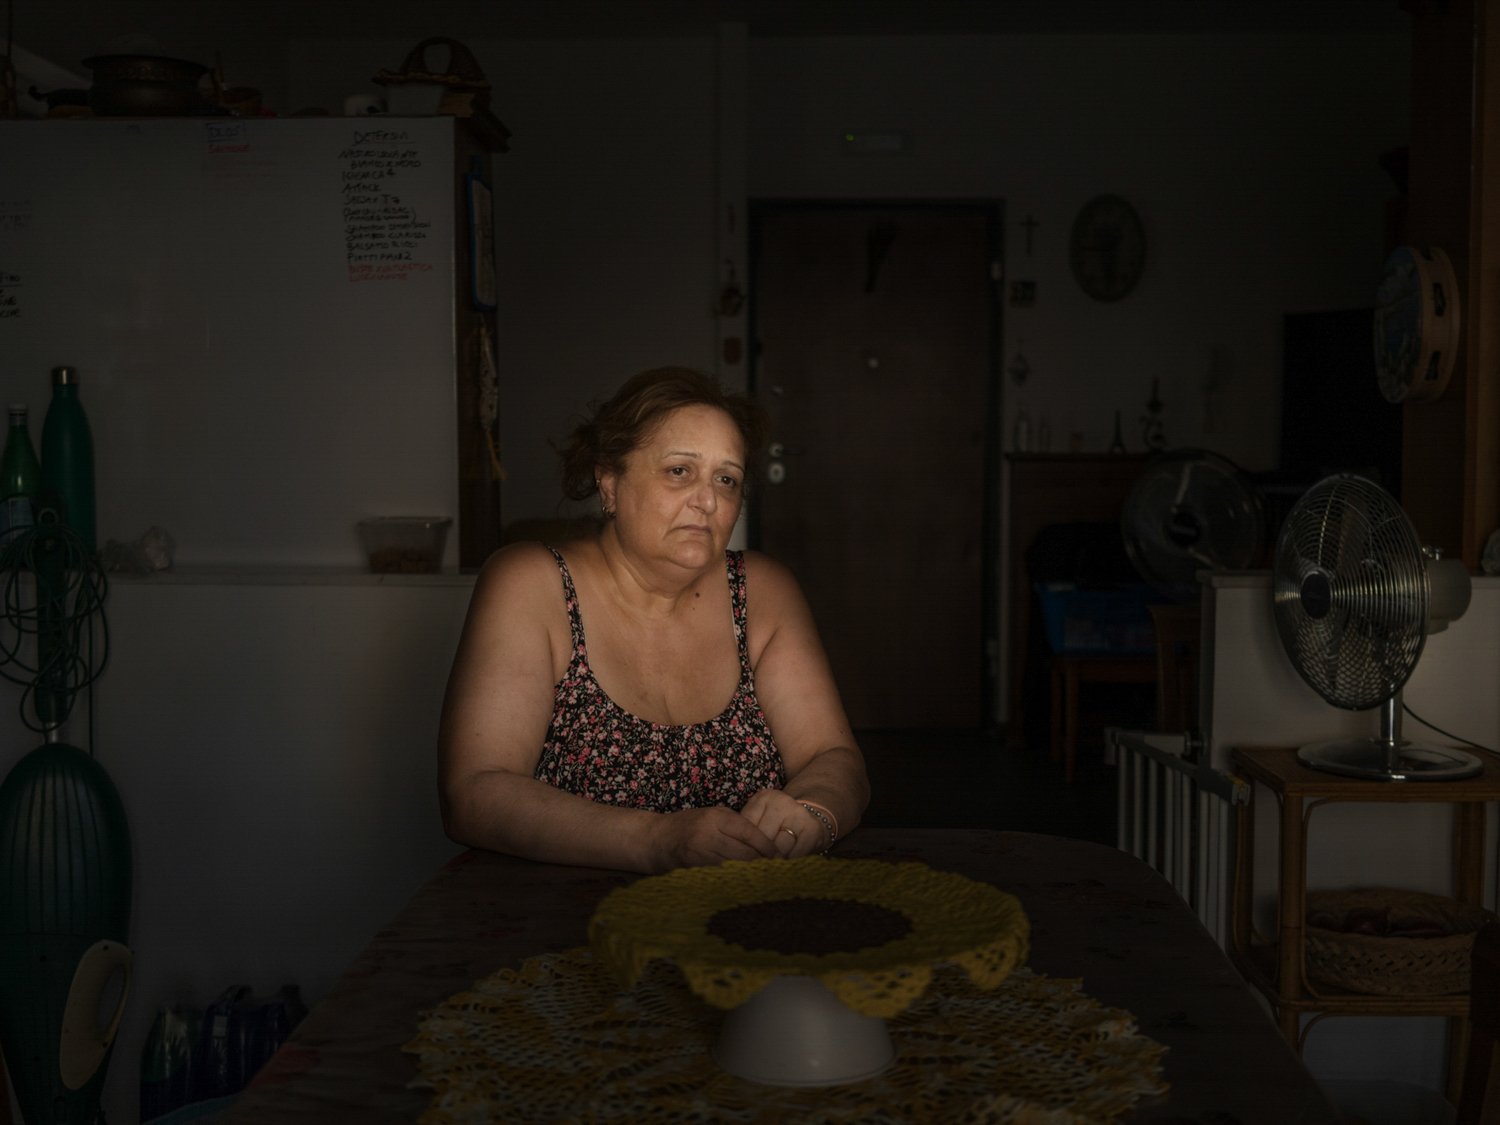  Paola Cipolletta, 58 anni, nella sala da pranzo della sua abitazione a Mugnano, Napoli. Dal 2016 lotta con un tumore al colon e altre patologie tumorali insorte successivamente al fegato e ai polmoni. Un’analisi tossicologica sul suo sangue ha evide